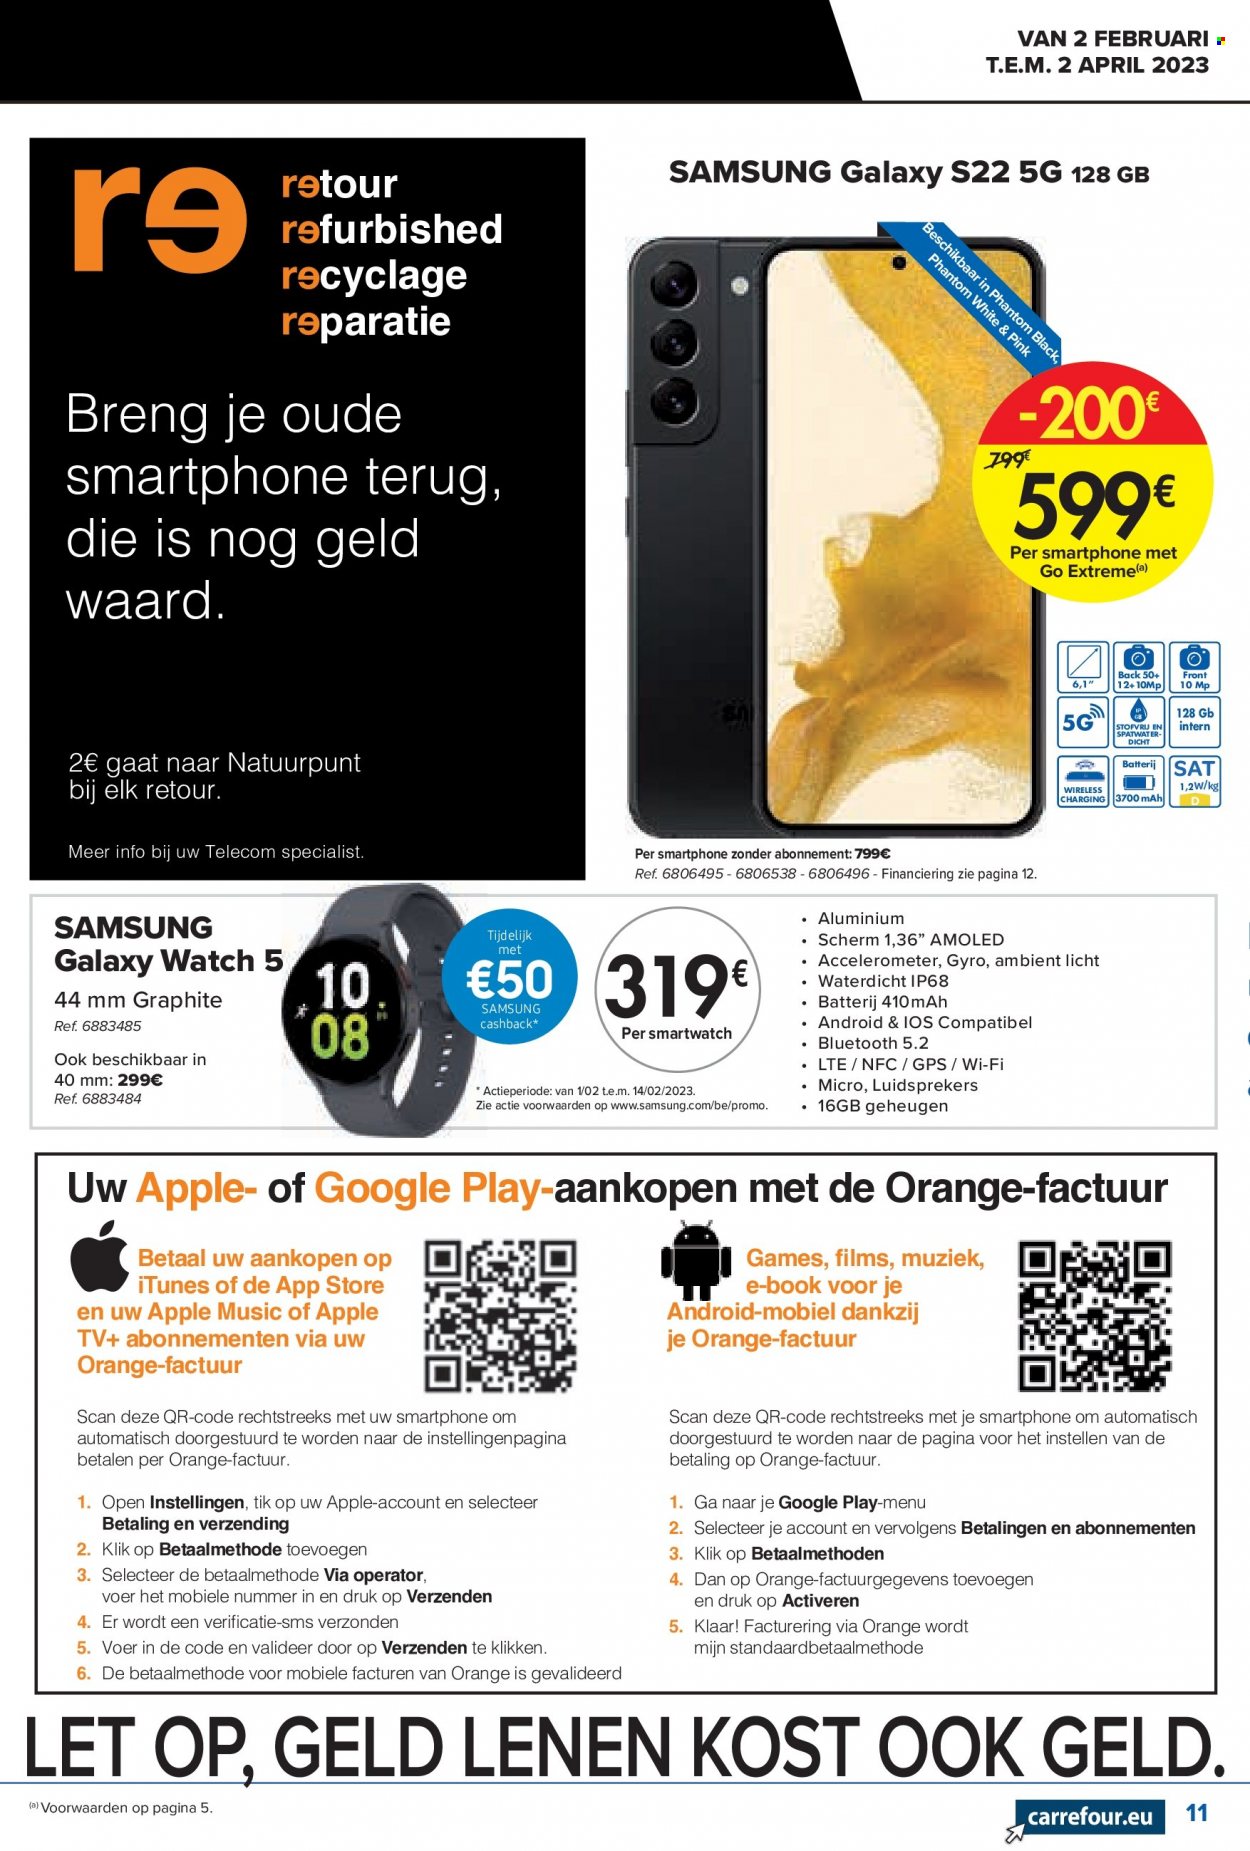 thumbnail - Catalogue Carrefour hypermarkt - 02/02/2023 - 02/04/2023 - Produits soldés - Samsung, Apple, smartphone, téléviseur. Page 11.